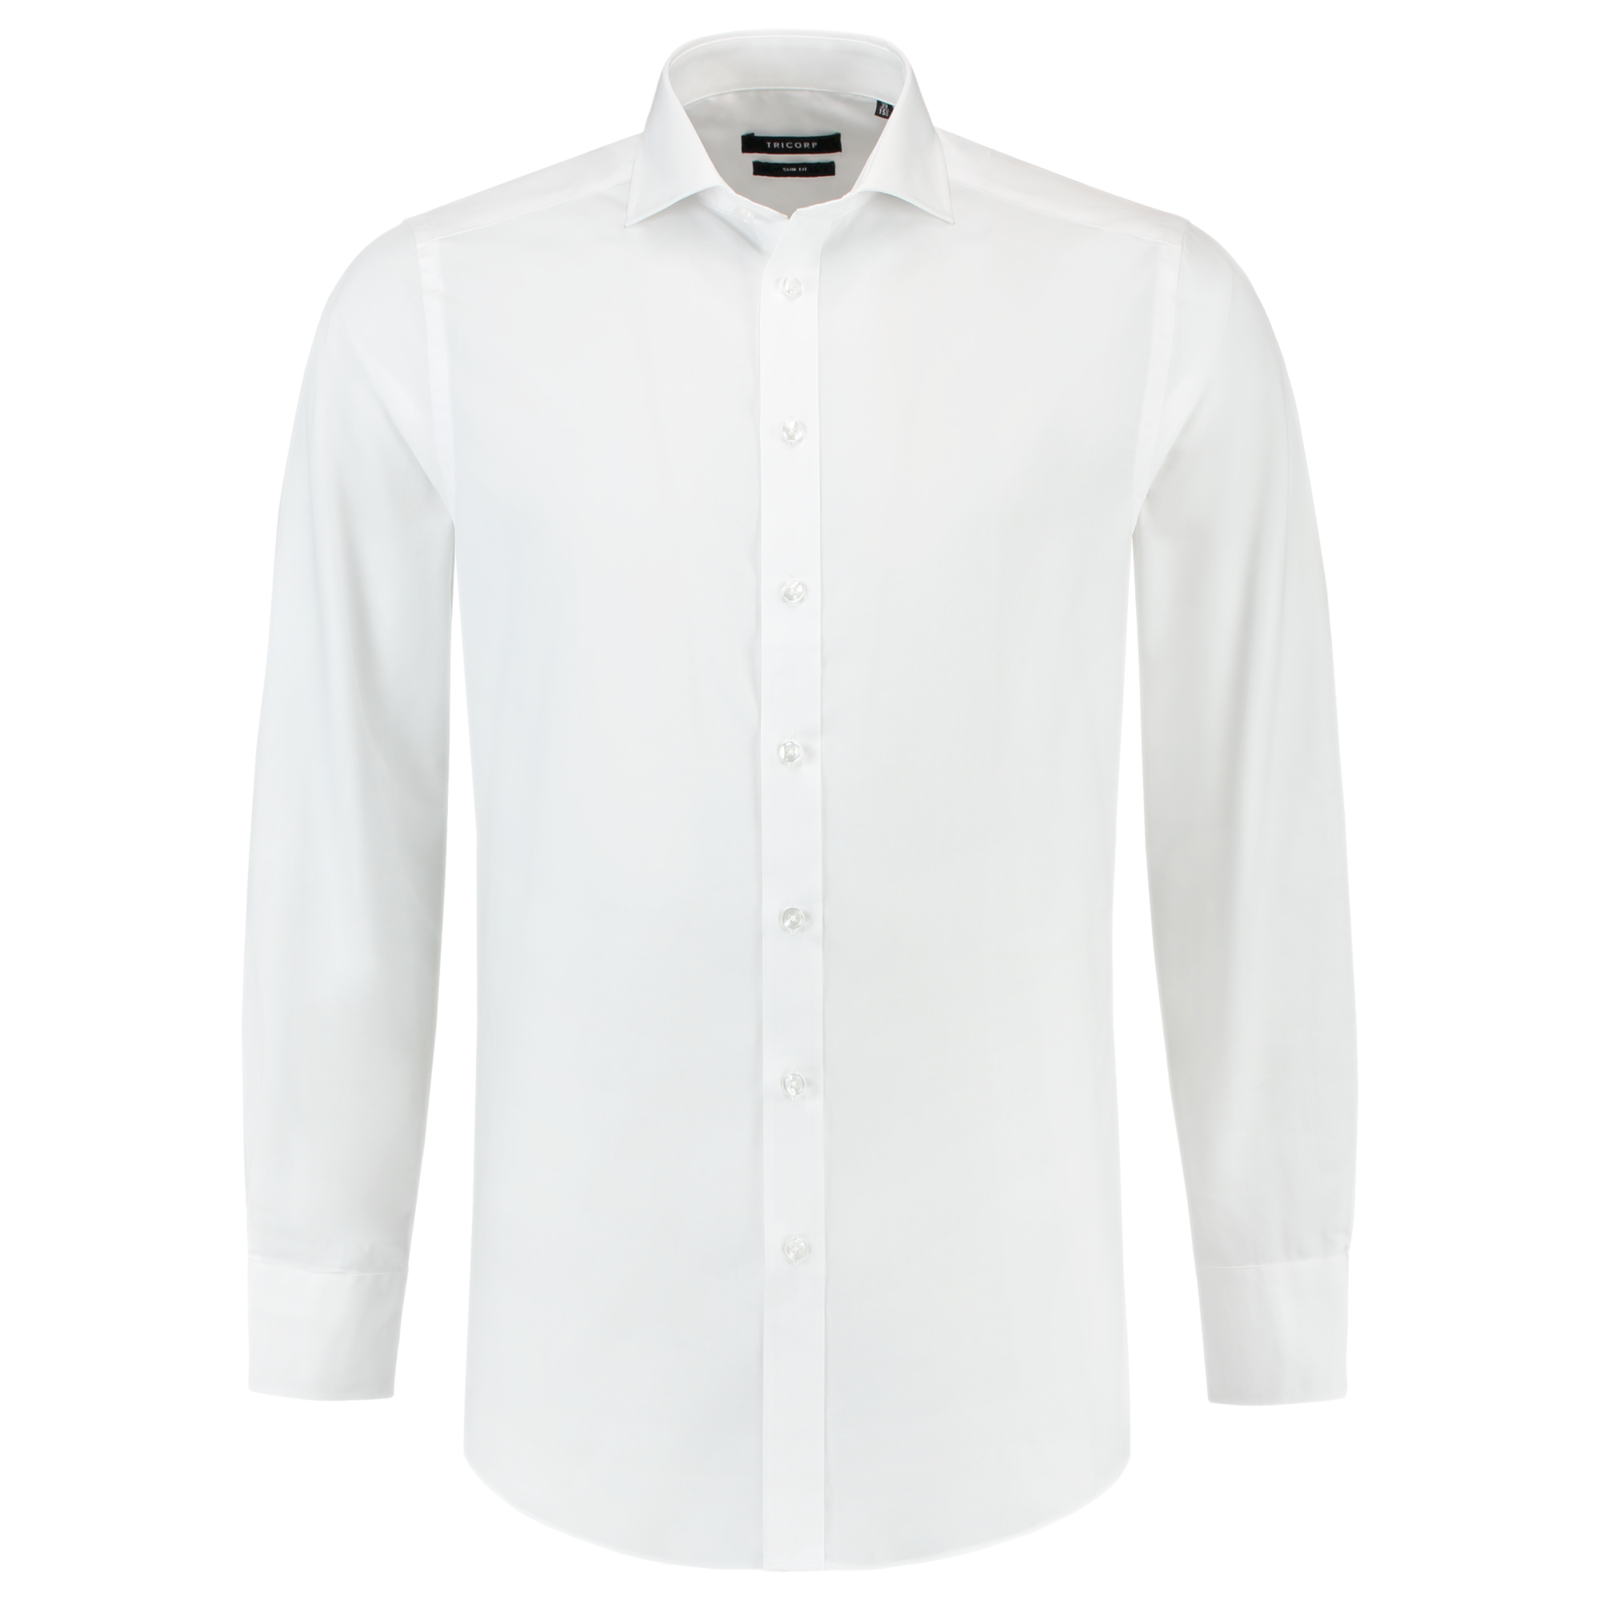 Pánska košeľa s dlhým rukávom Tricorp Fitted Stretch T23 - veľkosť: 46, farba: biela